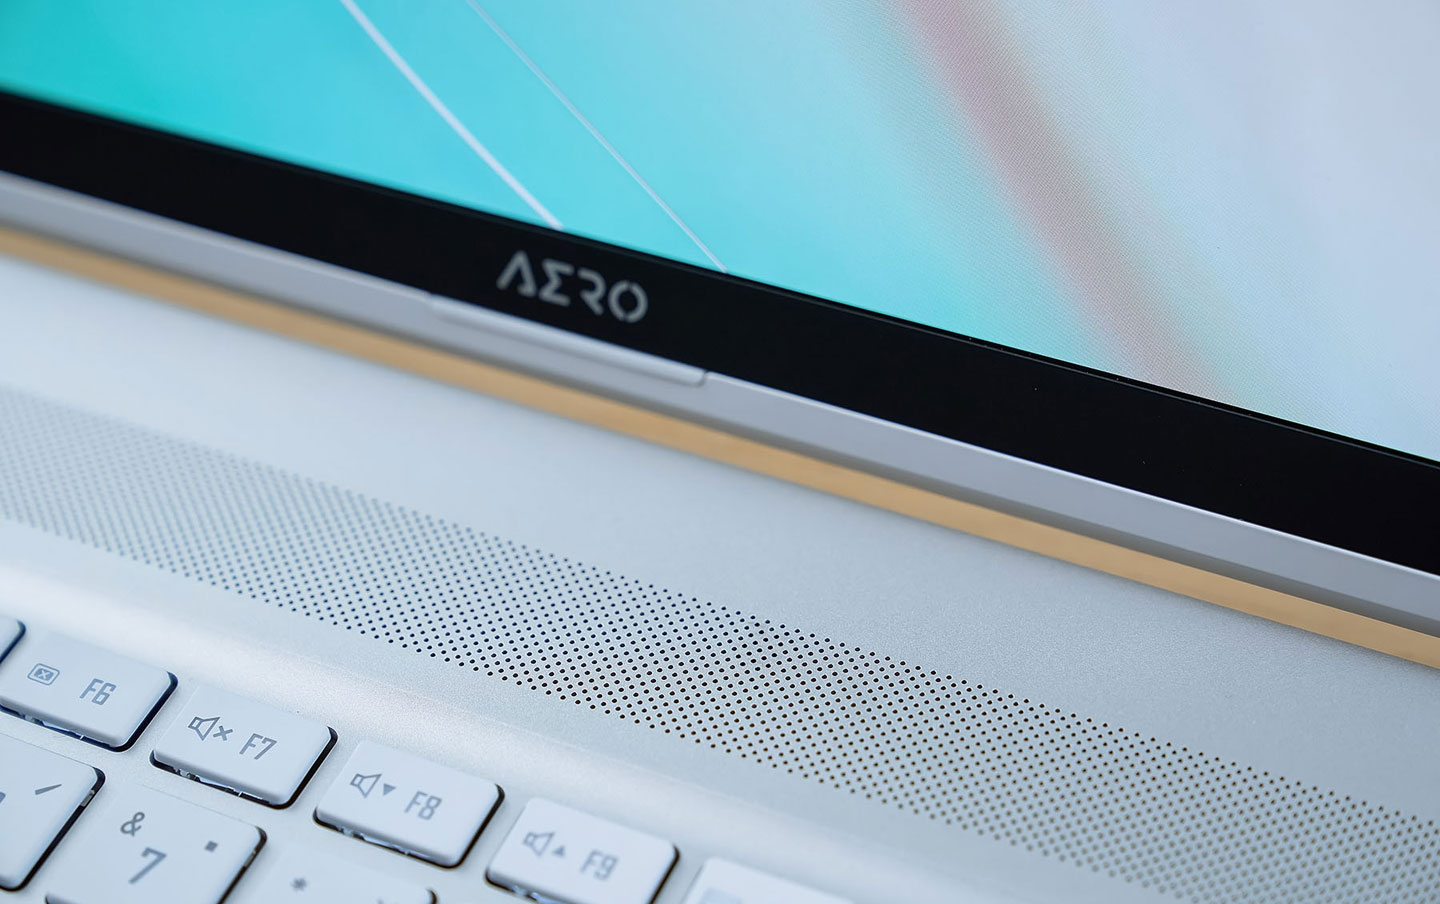 在鍵盤上方靠近螢幕 AERO LOGO 處有一個隱藏於網區塊的光源感測器，可以偵測環境亮度自動調校螢幕的顯示定。